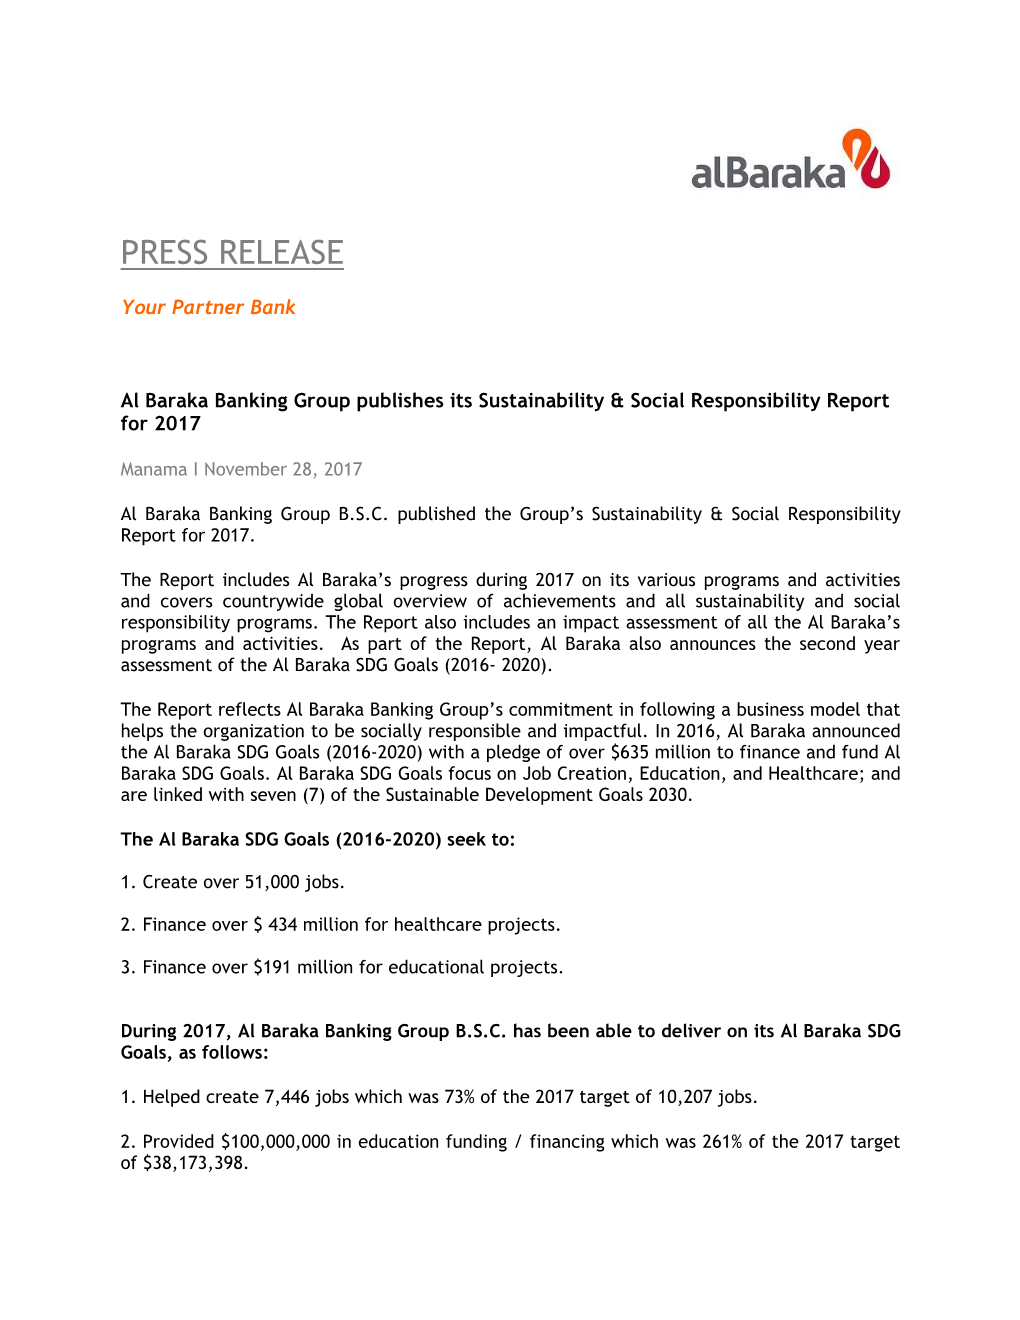 Al Baraka Banking Group Publishes Its Sustainability & Social